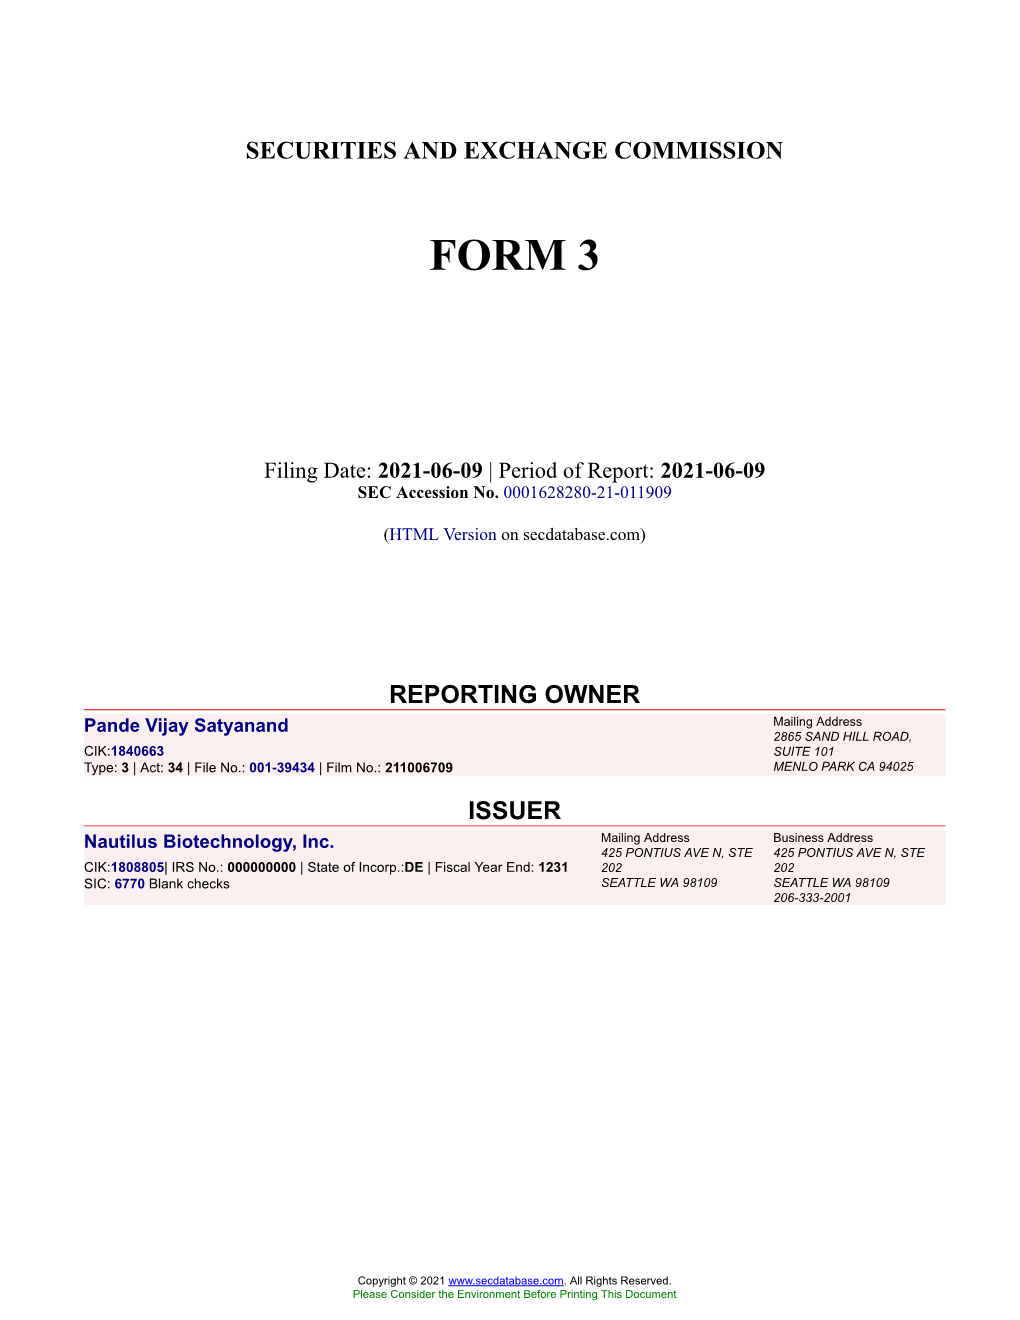 Pande Vijay Satyanand Form 3 Filed 2021-06-09